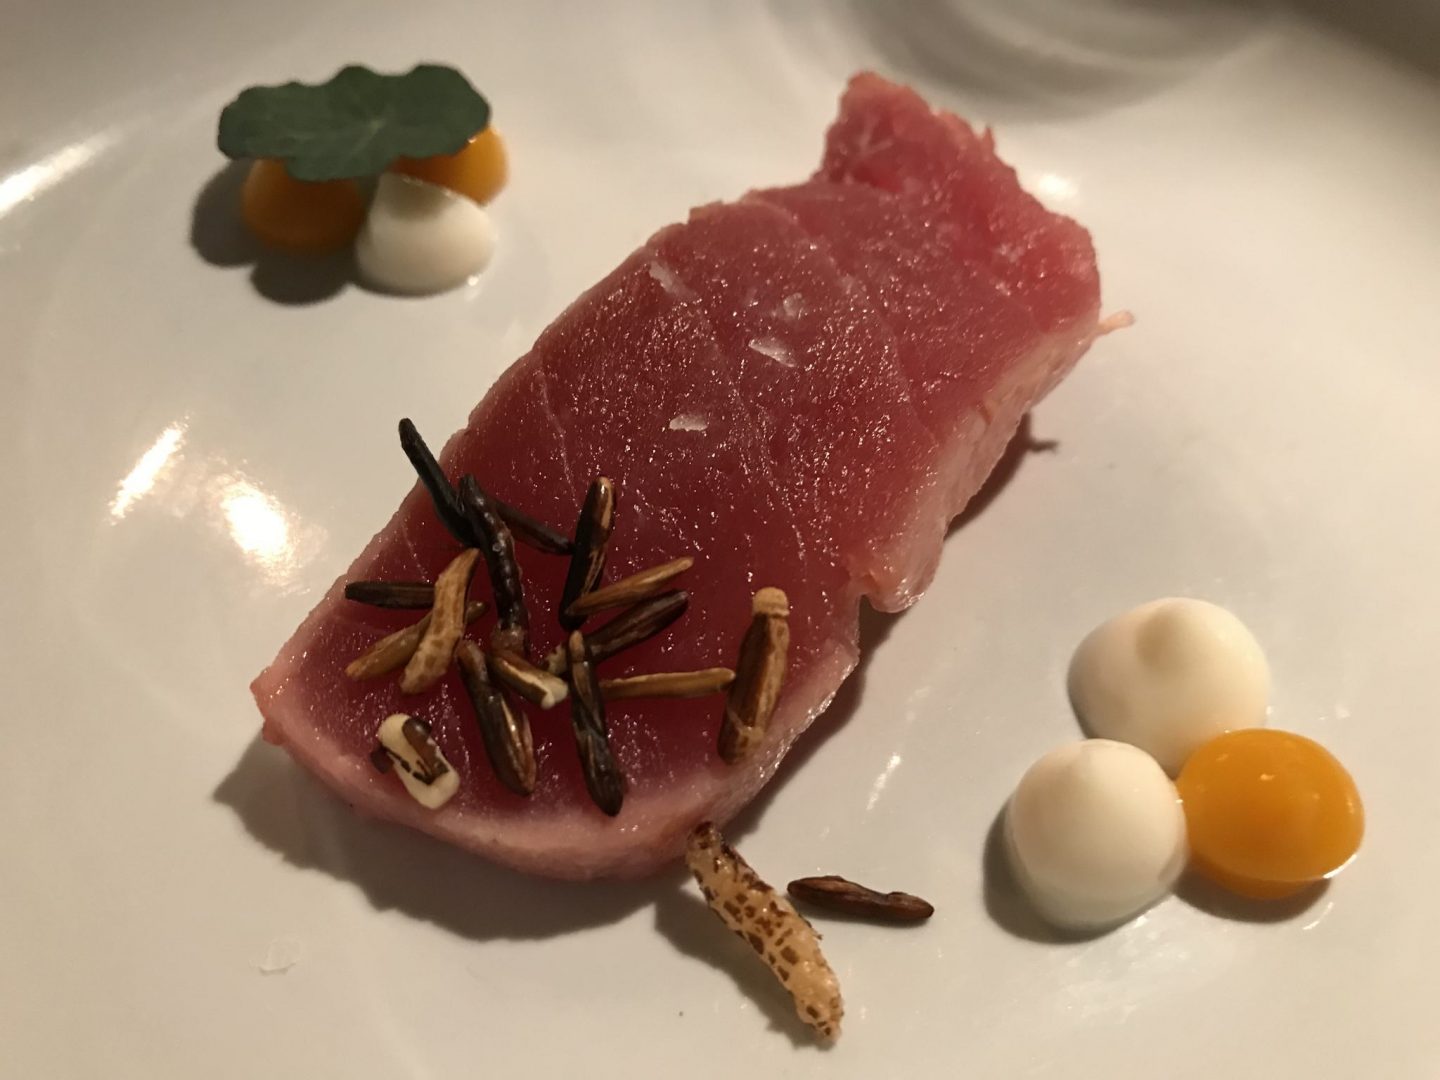 Gruß der Küche Tunfisch Thunfisch Erfahrung Menü Restaurant Hannappel Essen Foodblog Sternestulle